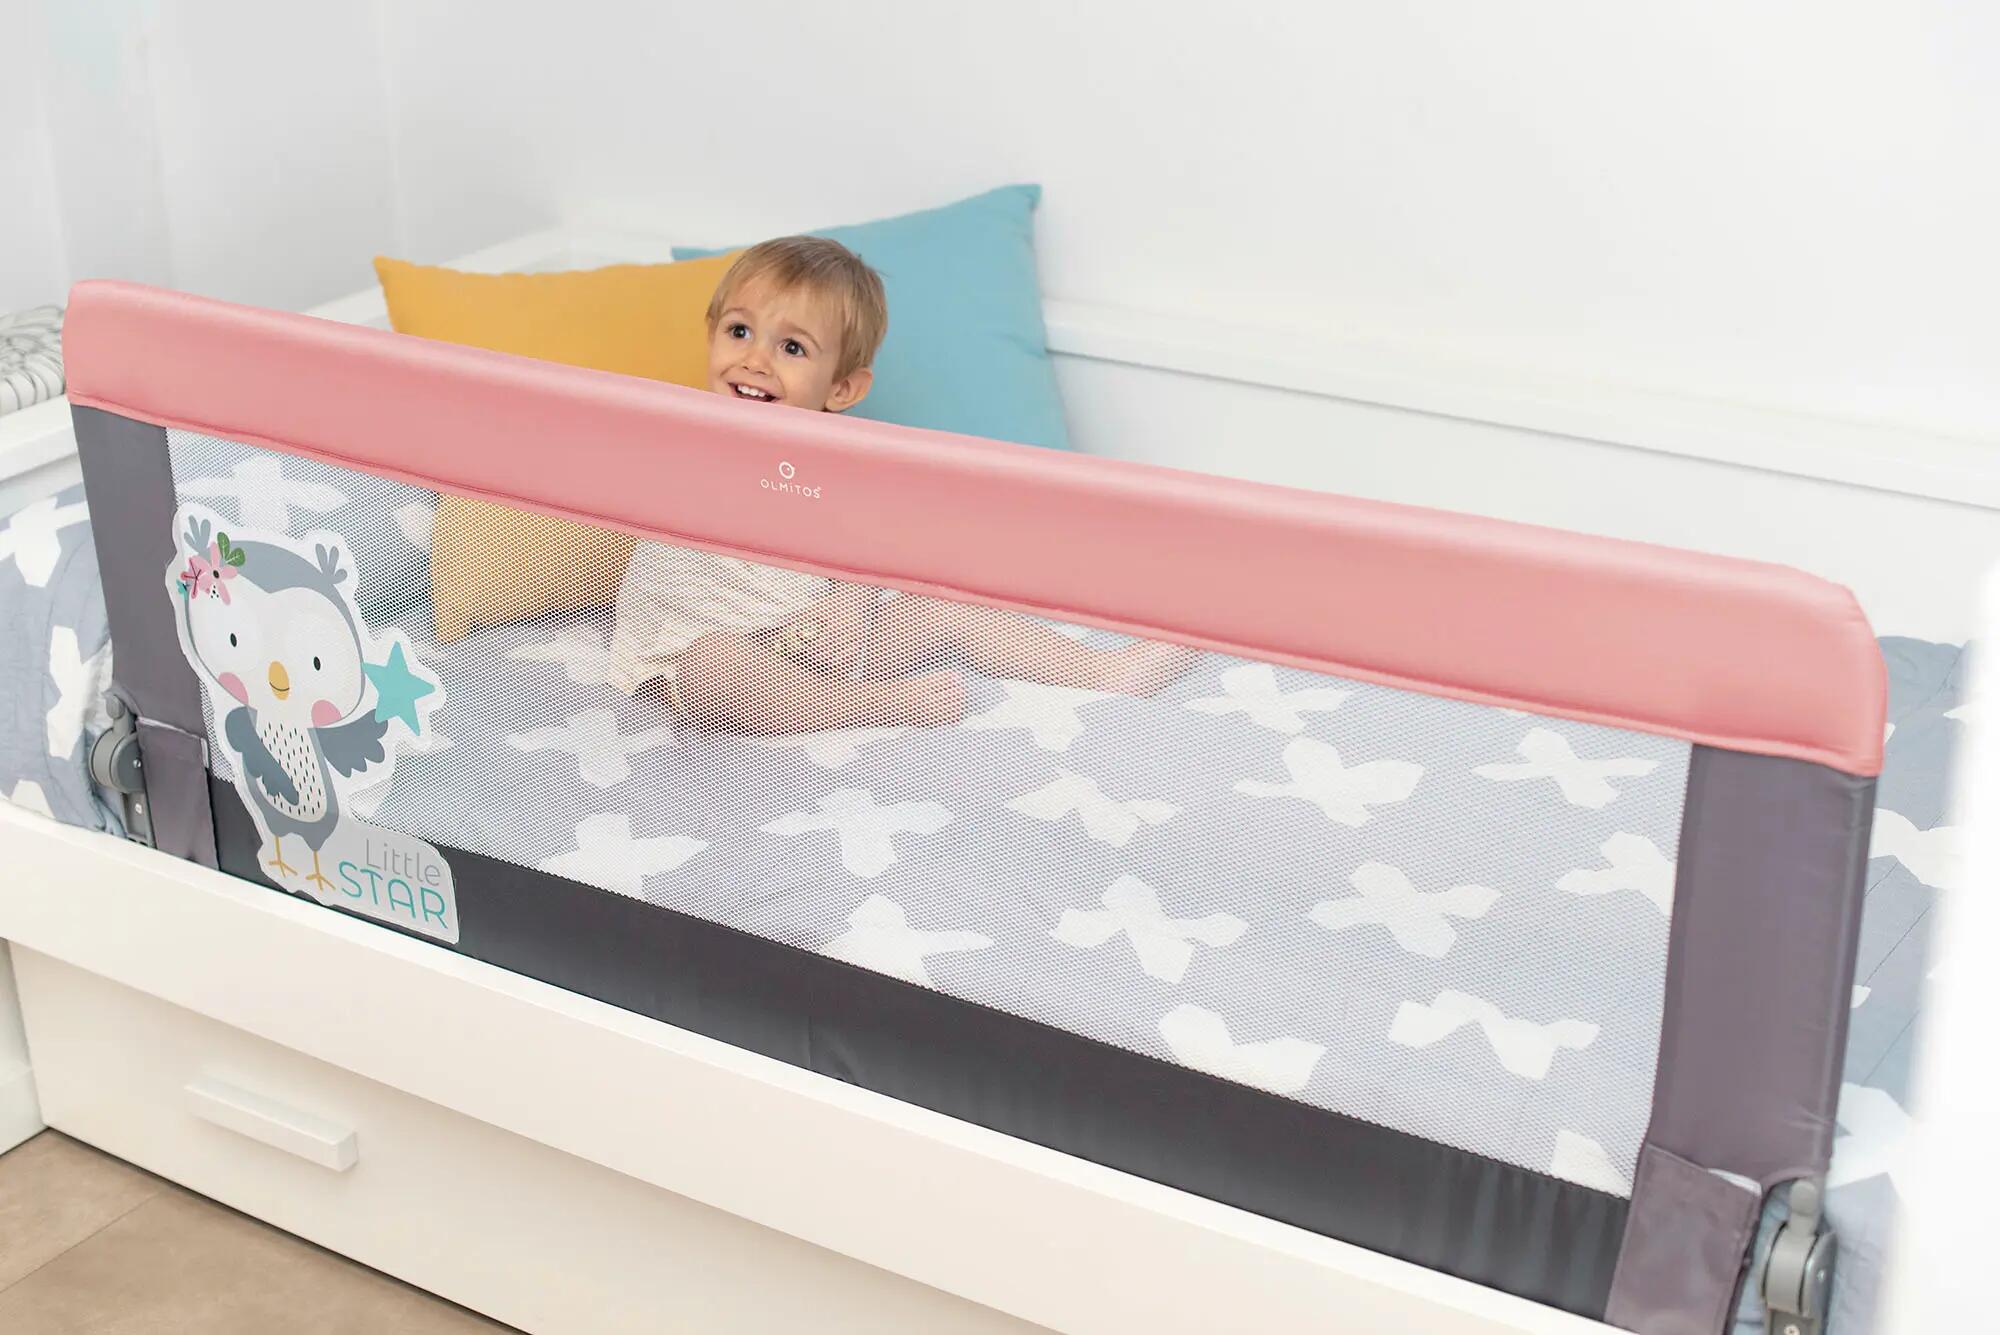 Crea una barrera infantil desmontable para la cama con PVC fácilmente DIY  